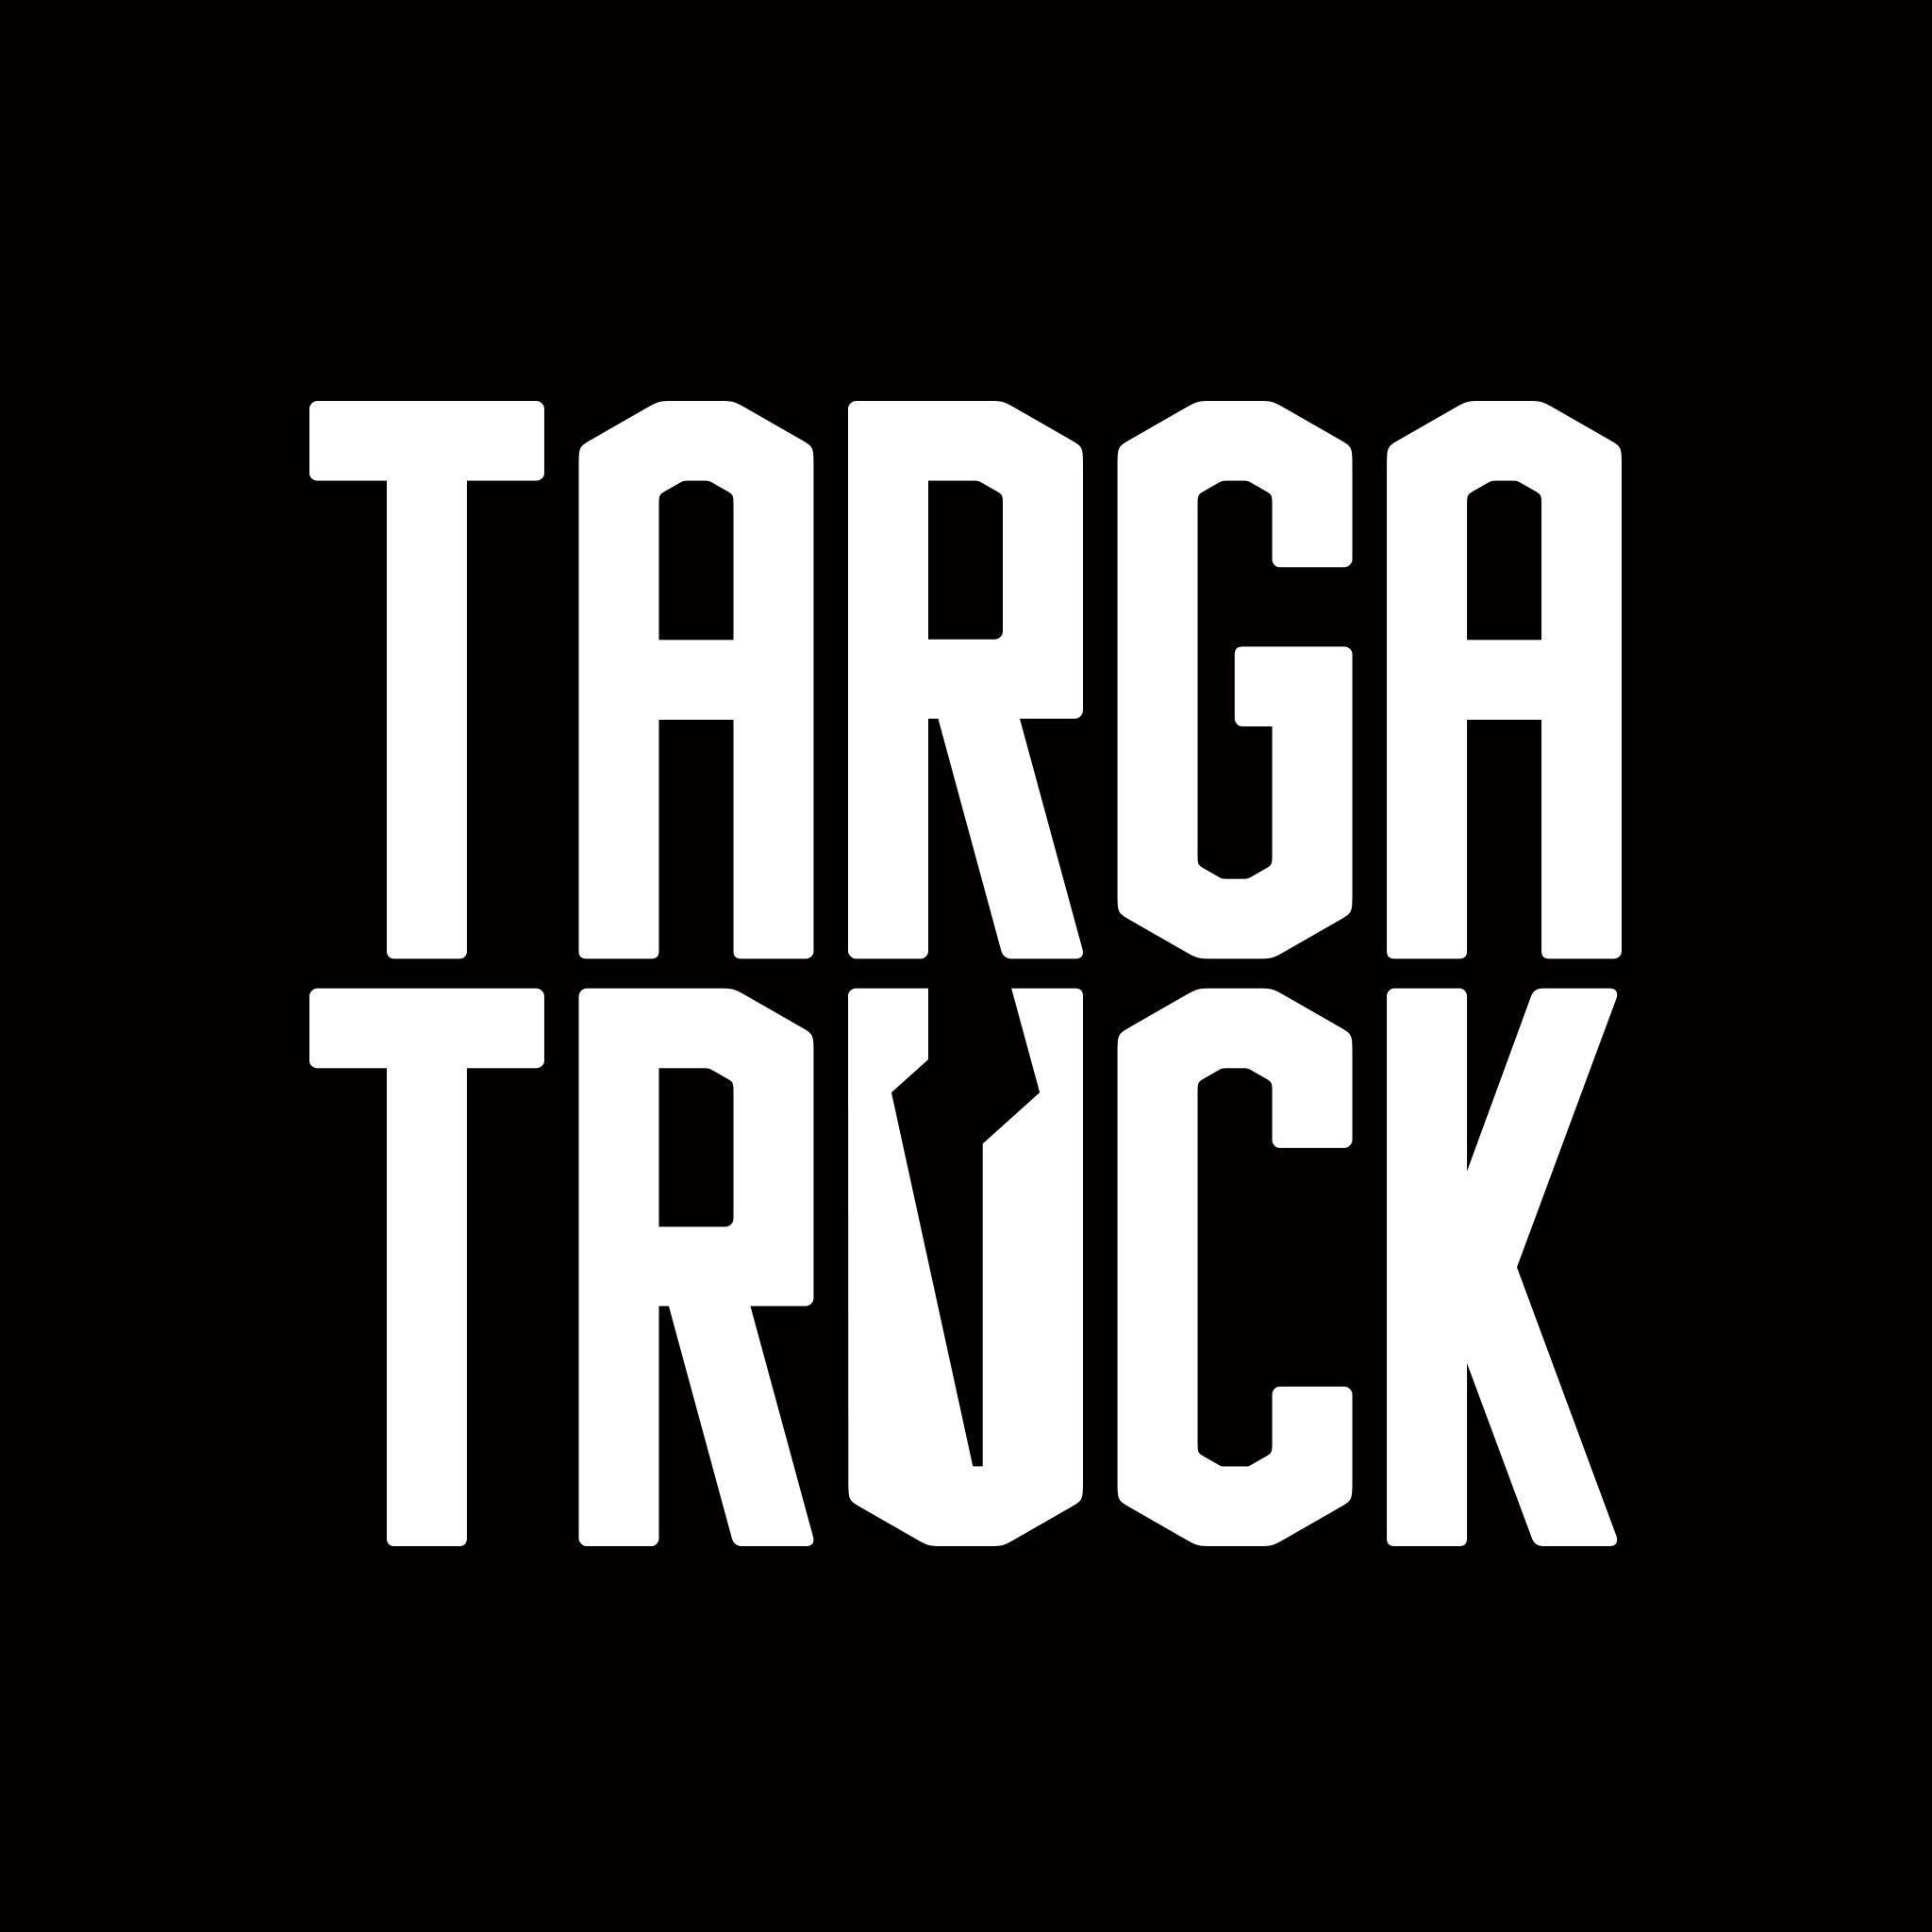 Targa Logo - The Targa Truck logo The First Truck in Targa Newfoundland